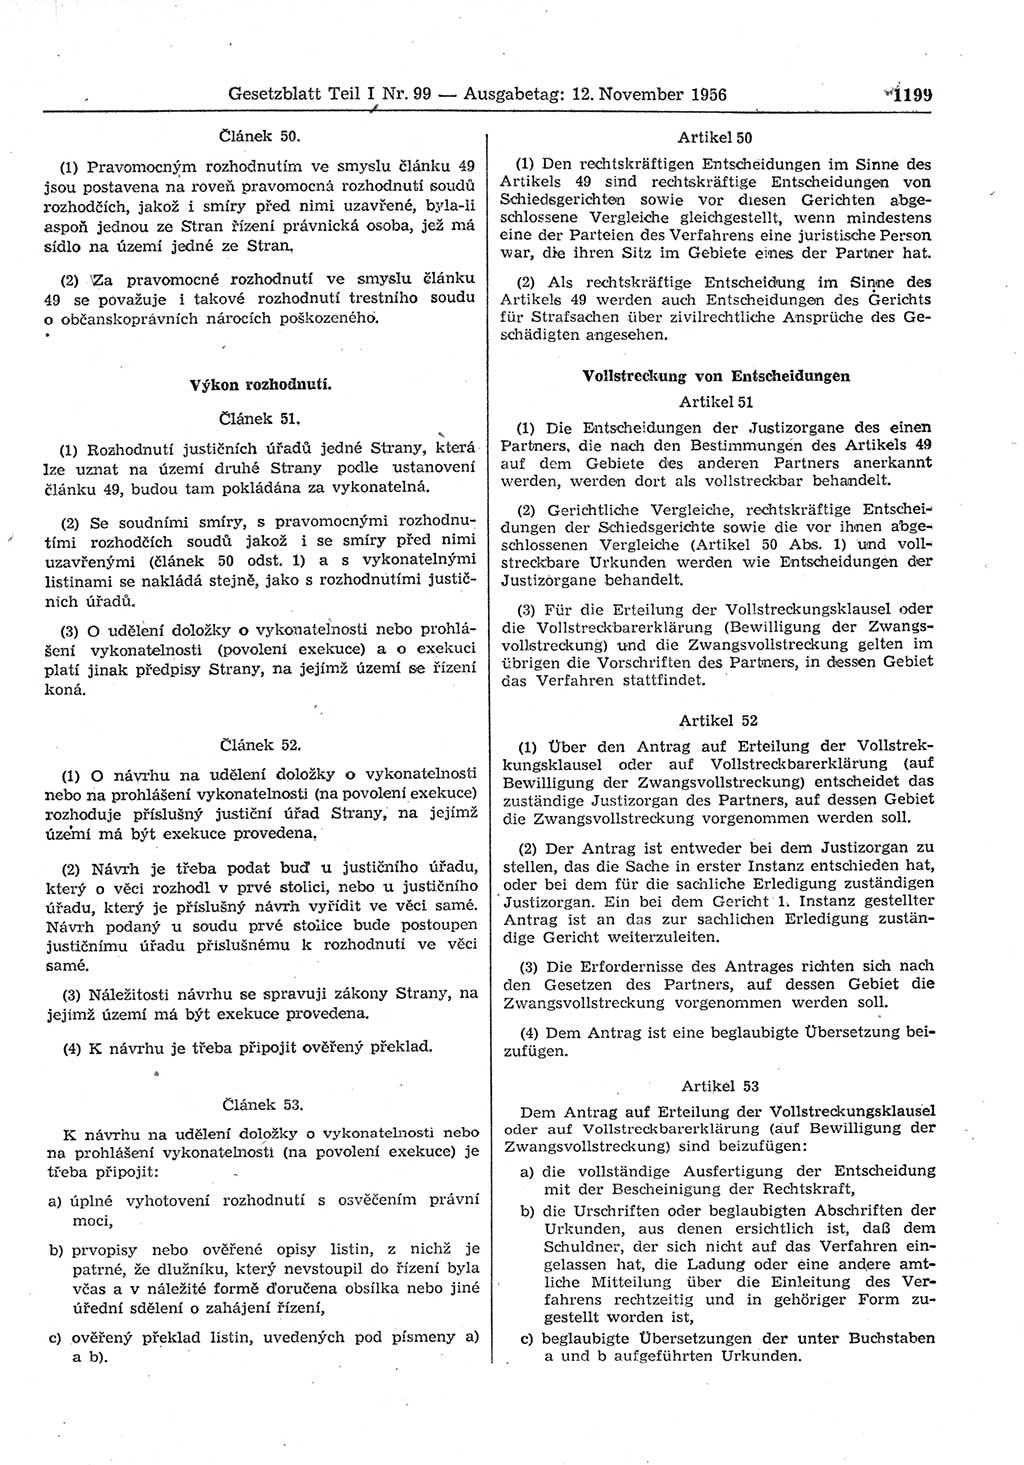 Gesetzblatt (GBl.) der Deutschen Demokratischen Republik (DDR) Teil Ⅰ 1956, Seite 1199 (GBl. DDR Ⅰ 1956, S. 1199)